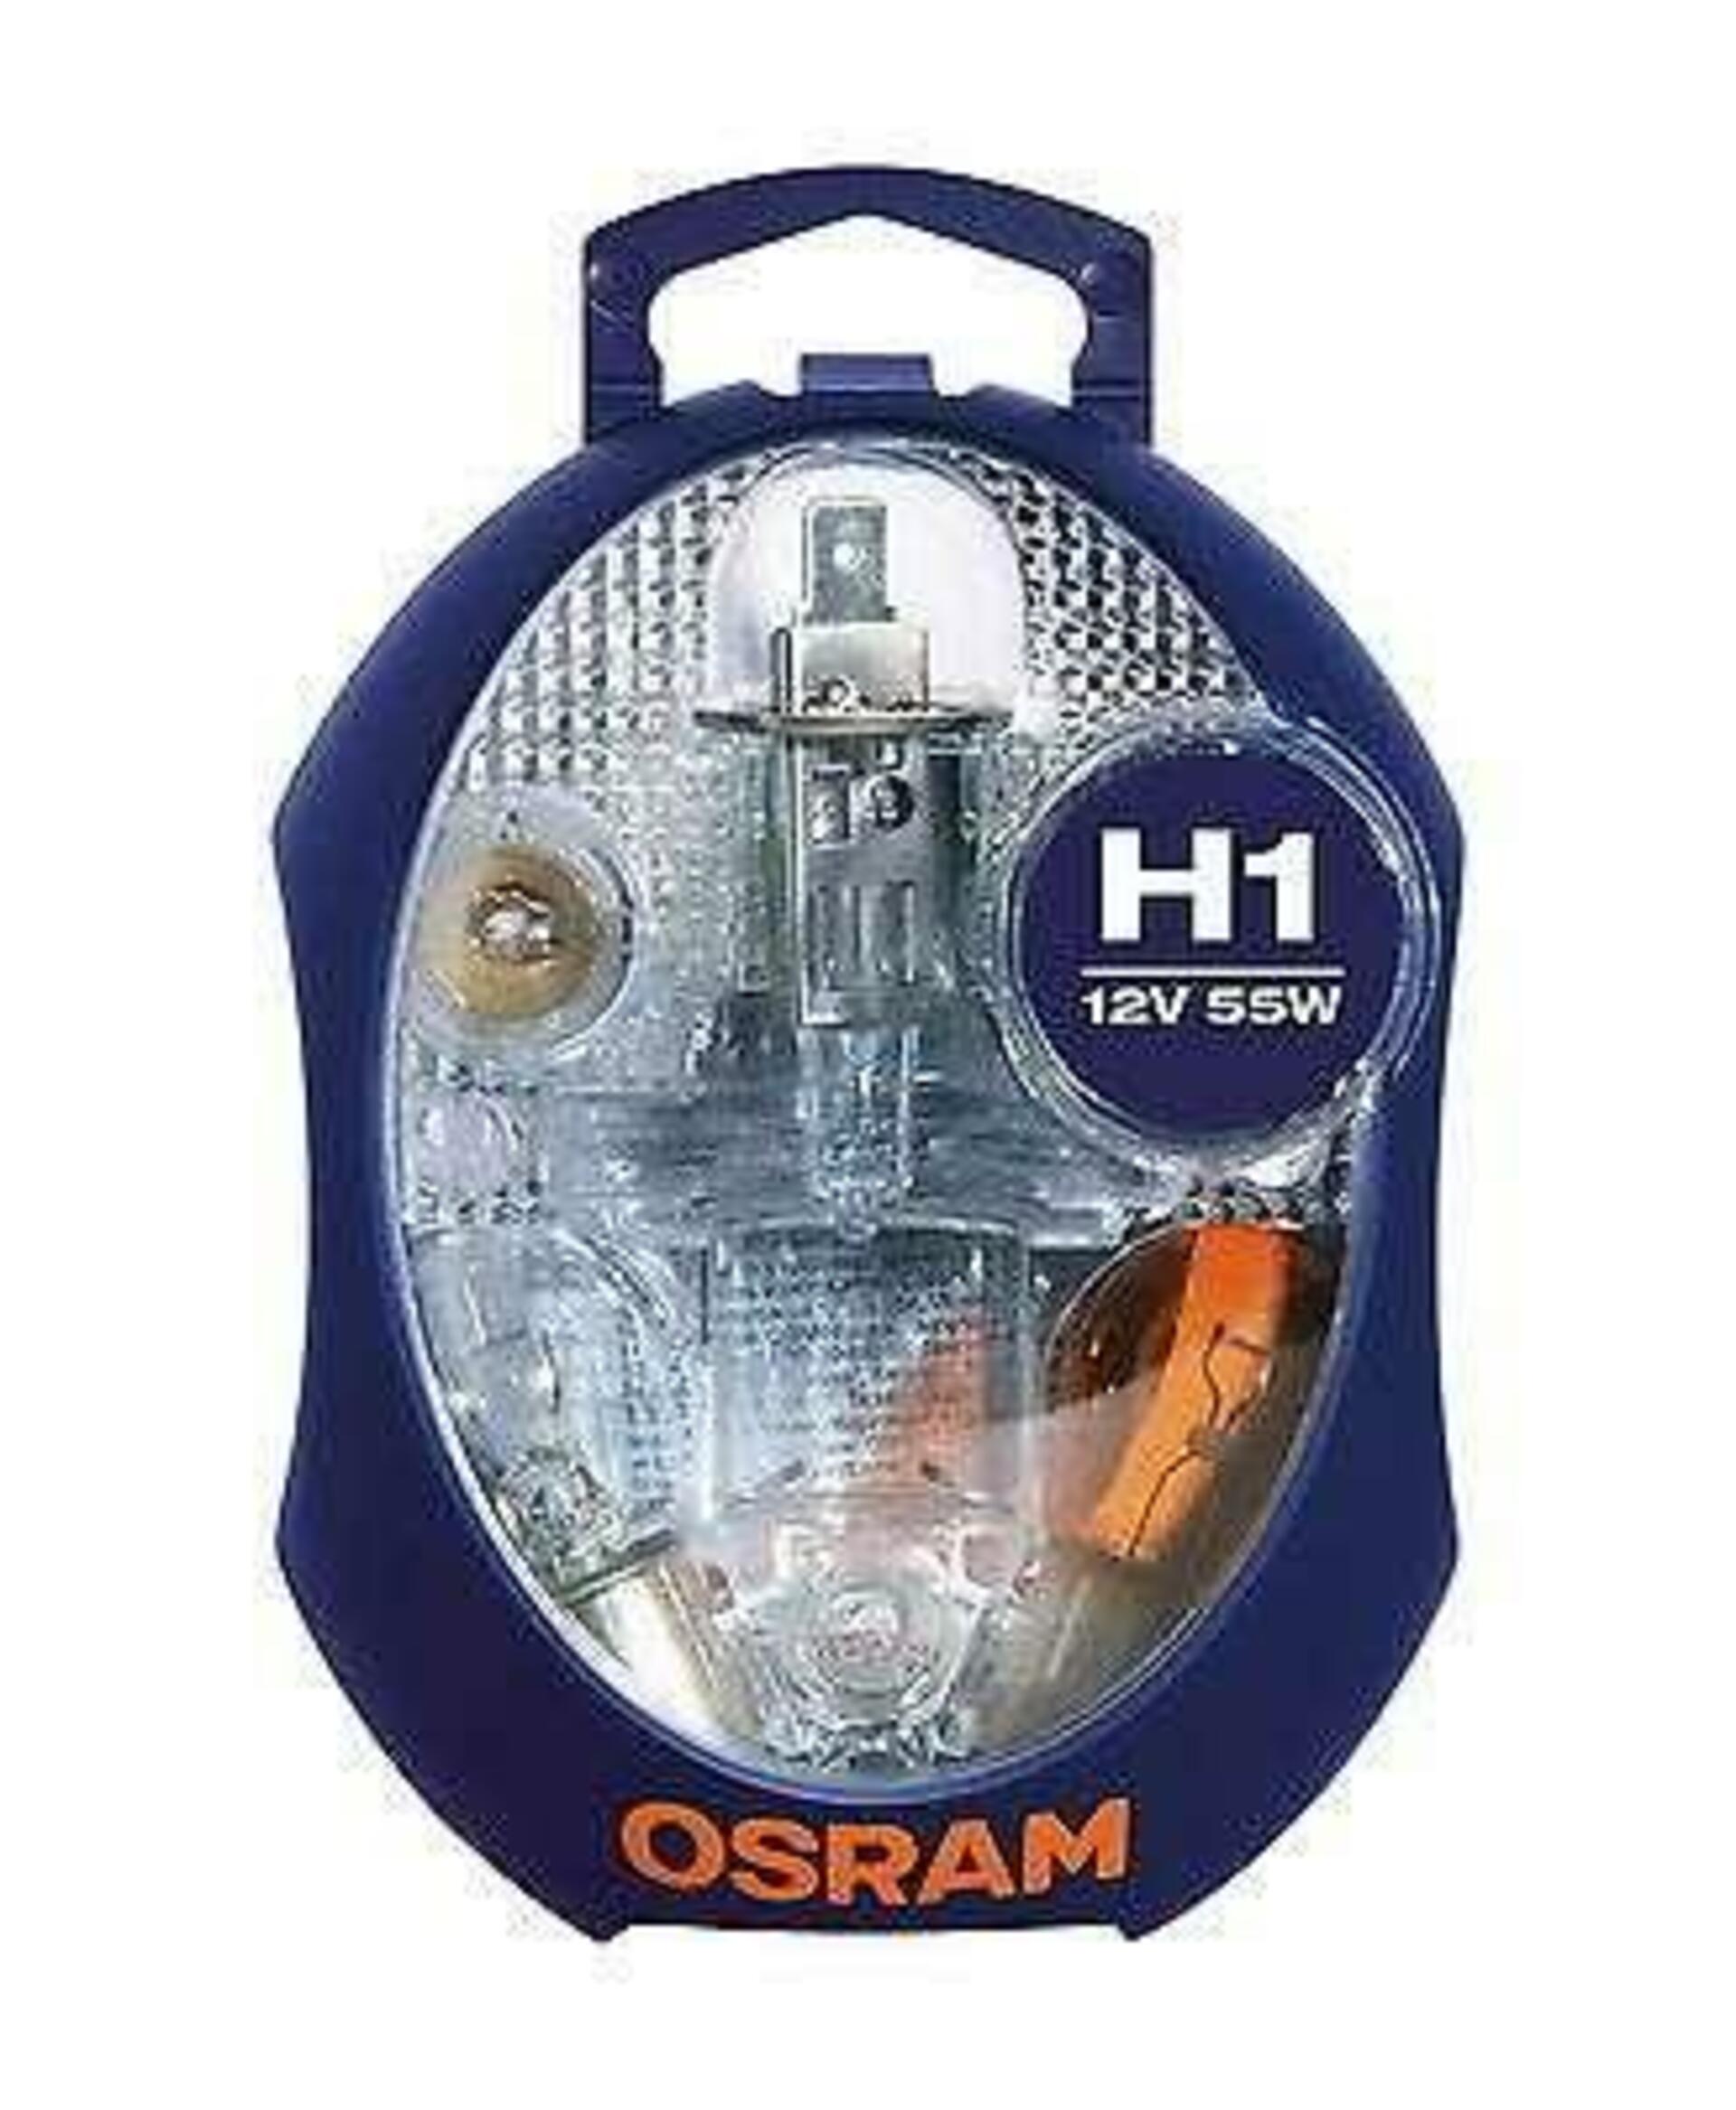 OSRAM sada autožárovek H1, náhradních žárovek a pojistek